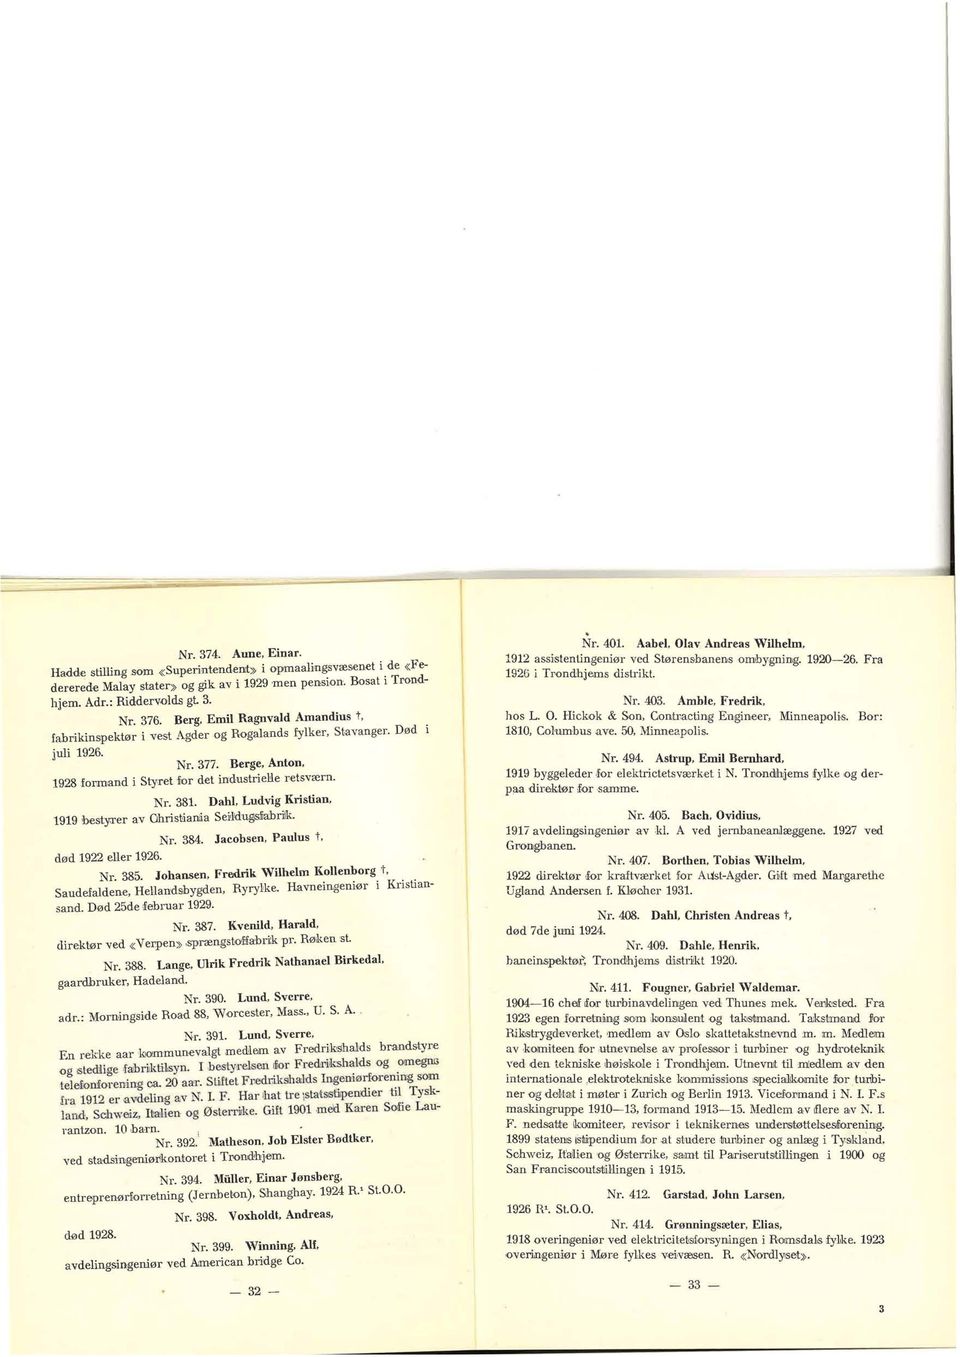 Dahl, Ludvig Kristian, 1919 besily:rer av Ohristianlia Seirlld:ugsna:bdk. Nr. 384. Jacobsen, Paulus t, død 1922 eller 1926. Nr. 385.